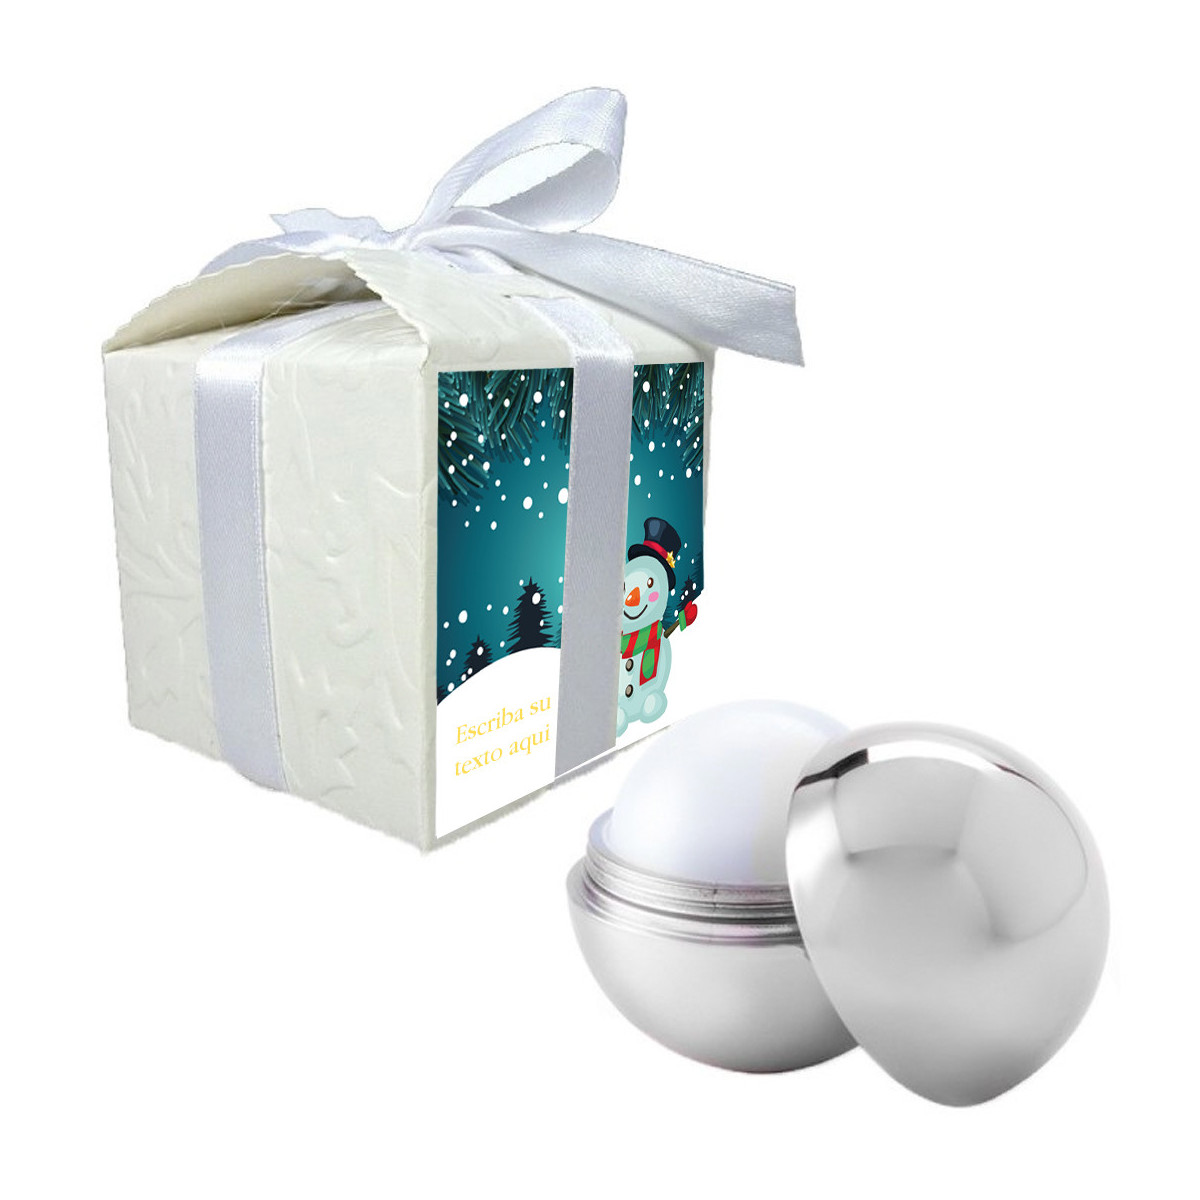 Balsamo per labbra presentato in una confezione regalo personalizzata con una frase adesiva natalizia